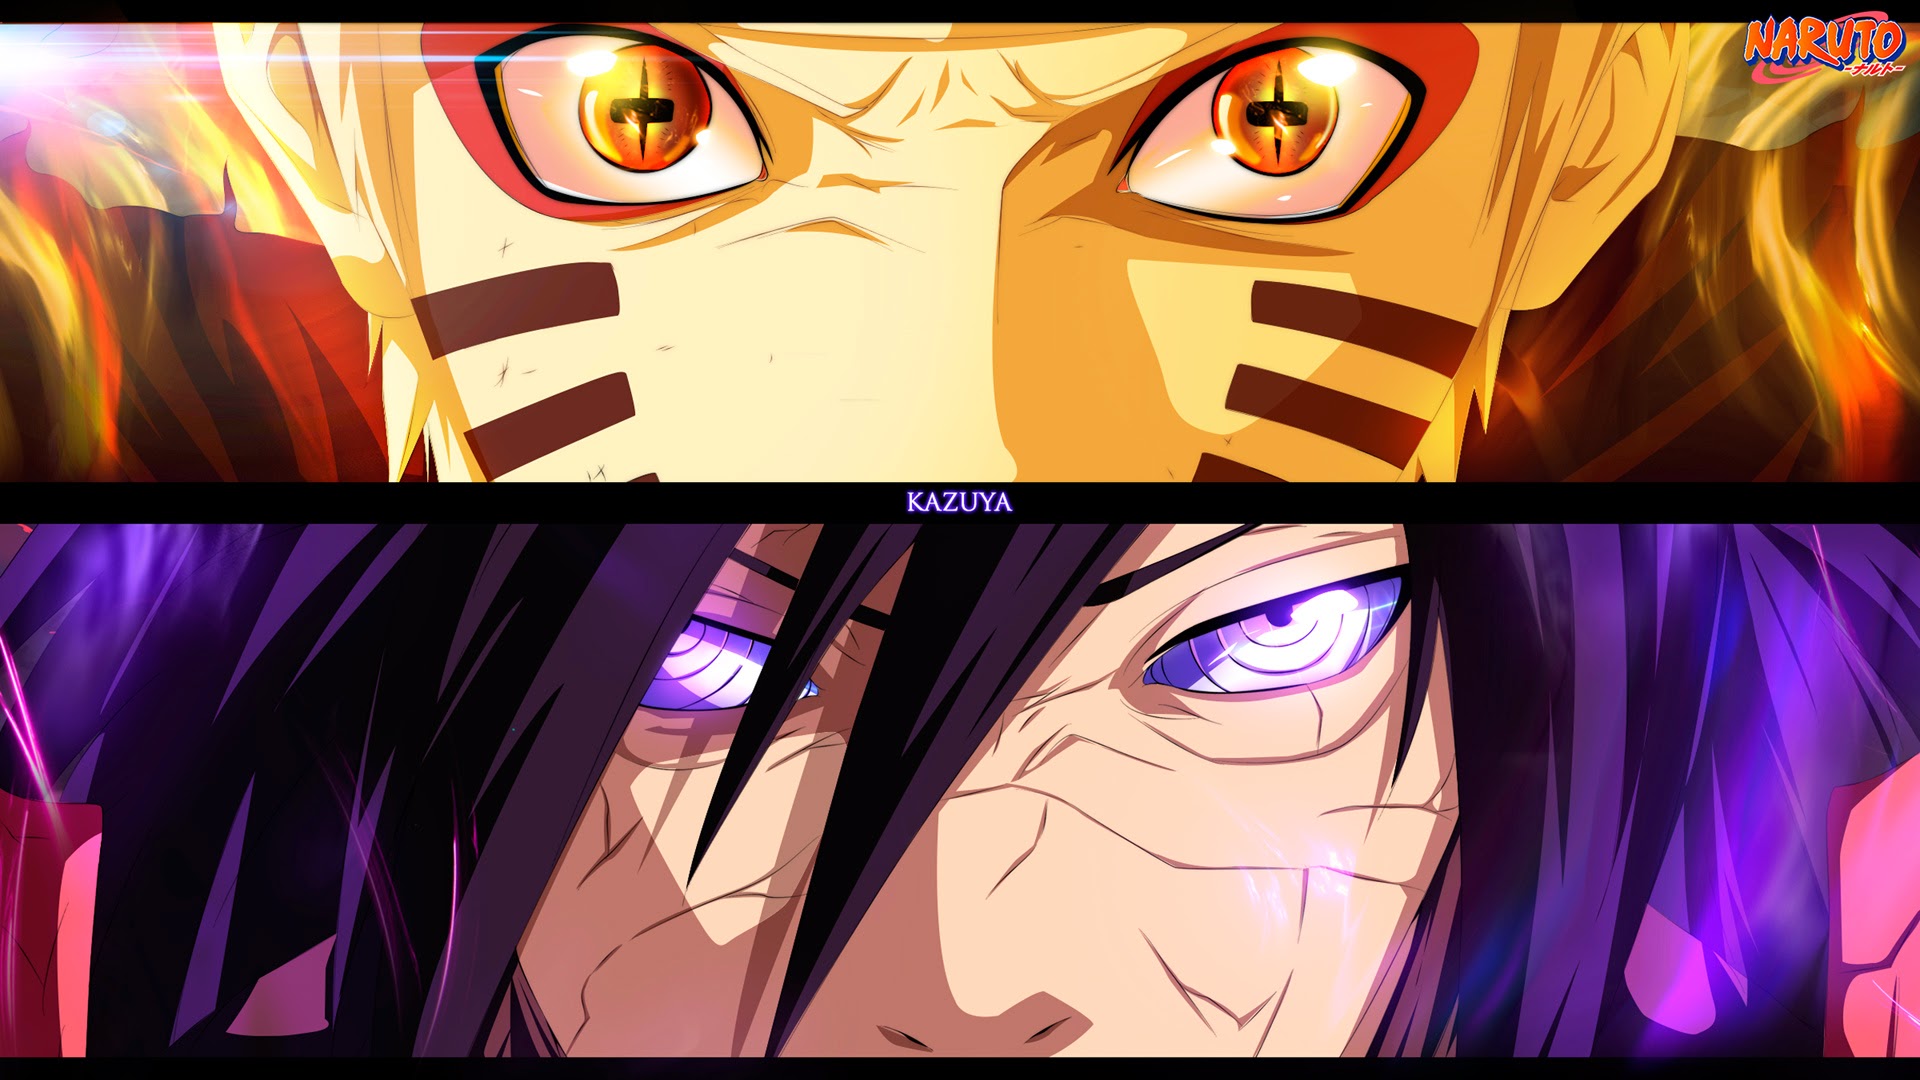 Kazuya Naruto Wallpaper - Naruto Sasuke Vs Madara , HD Wallpaper & Backgrounds